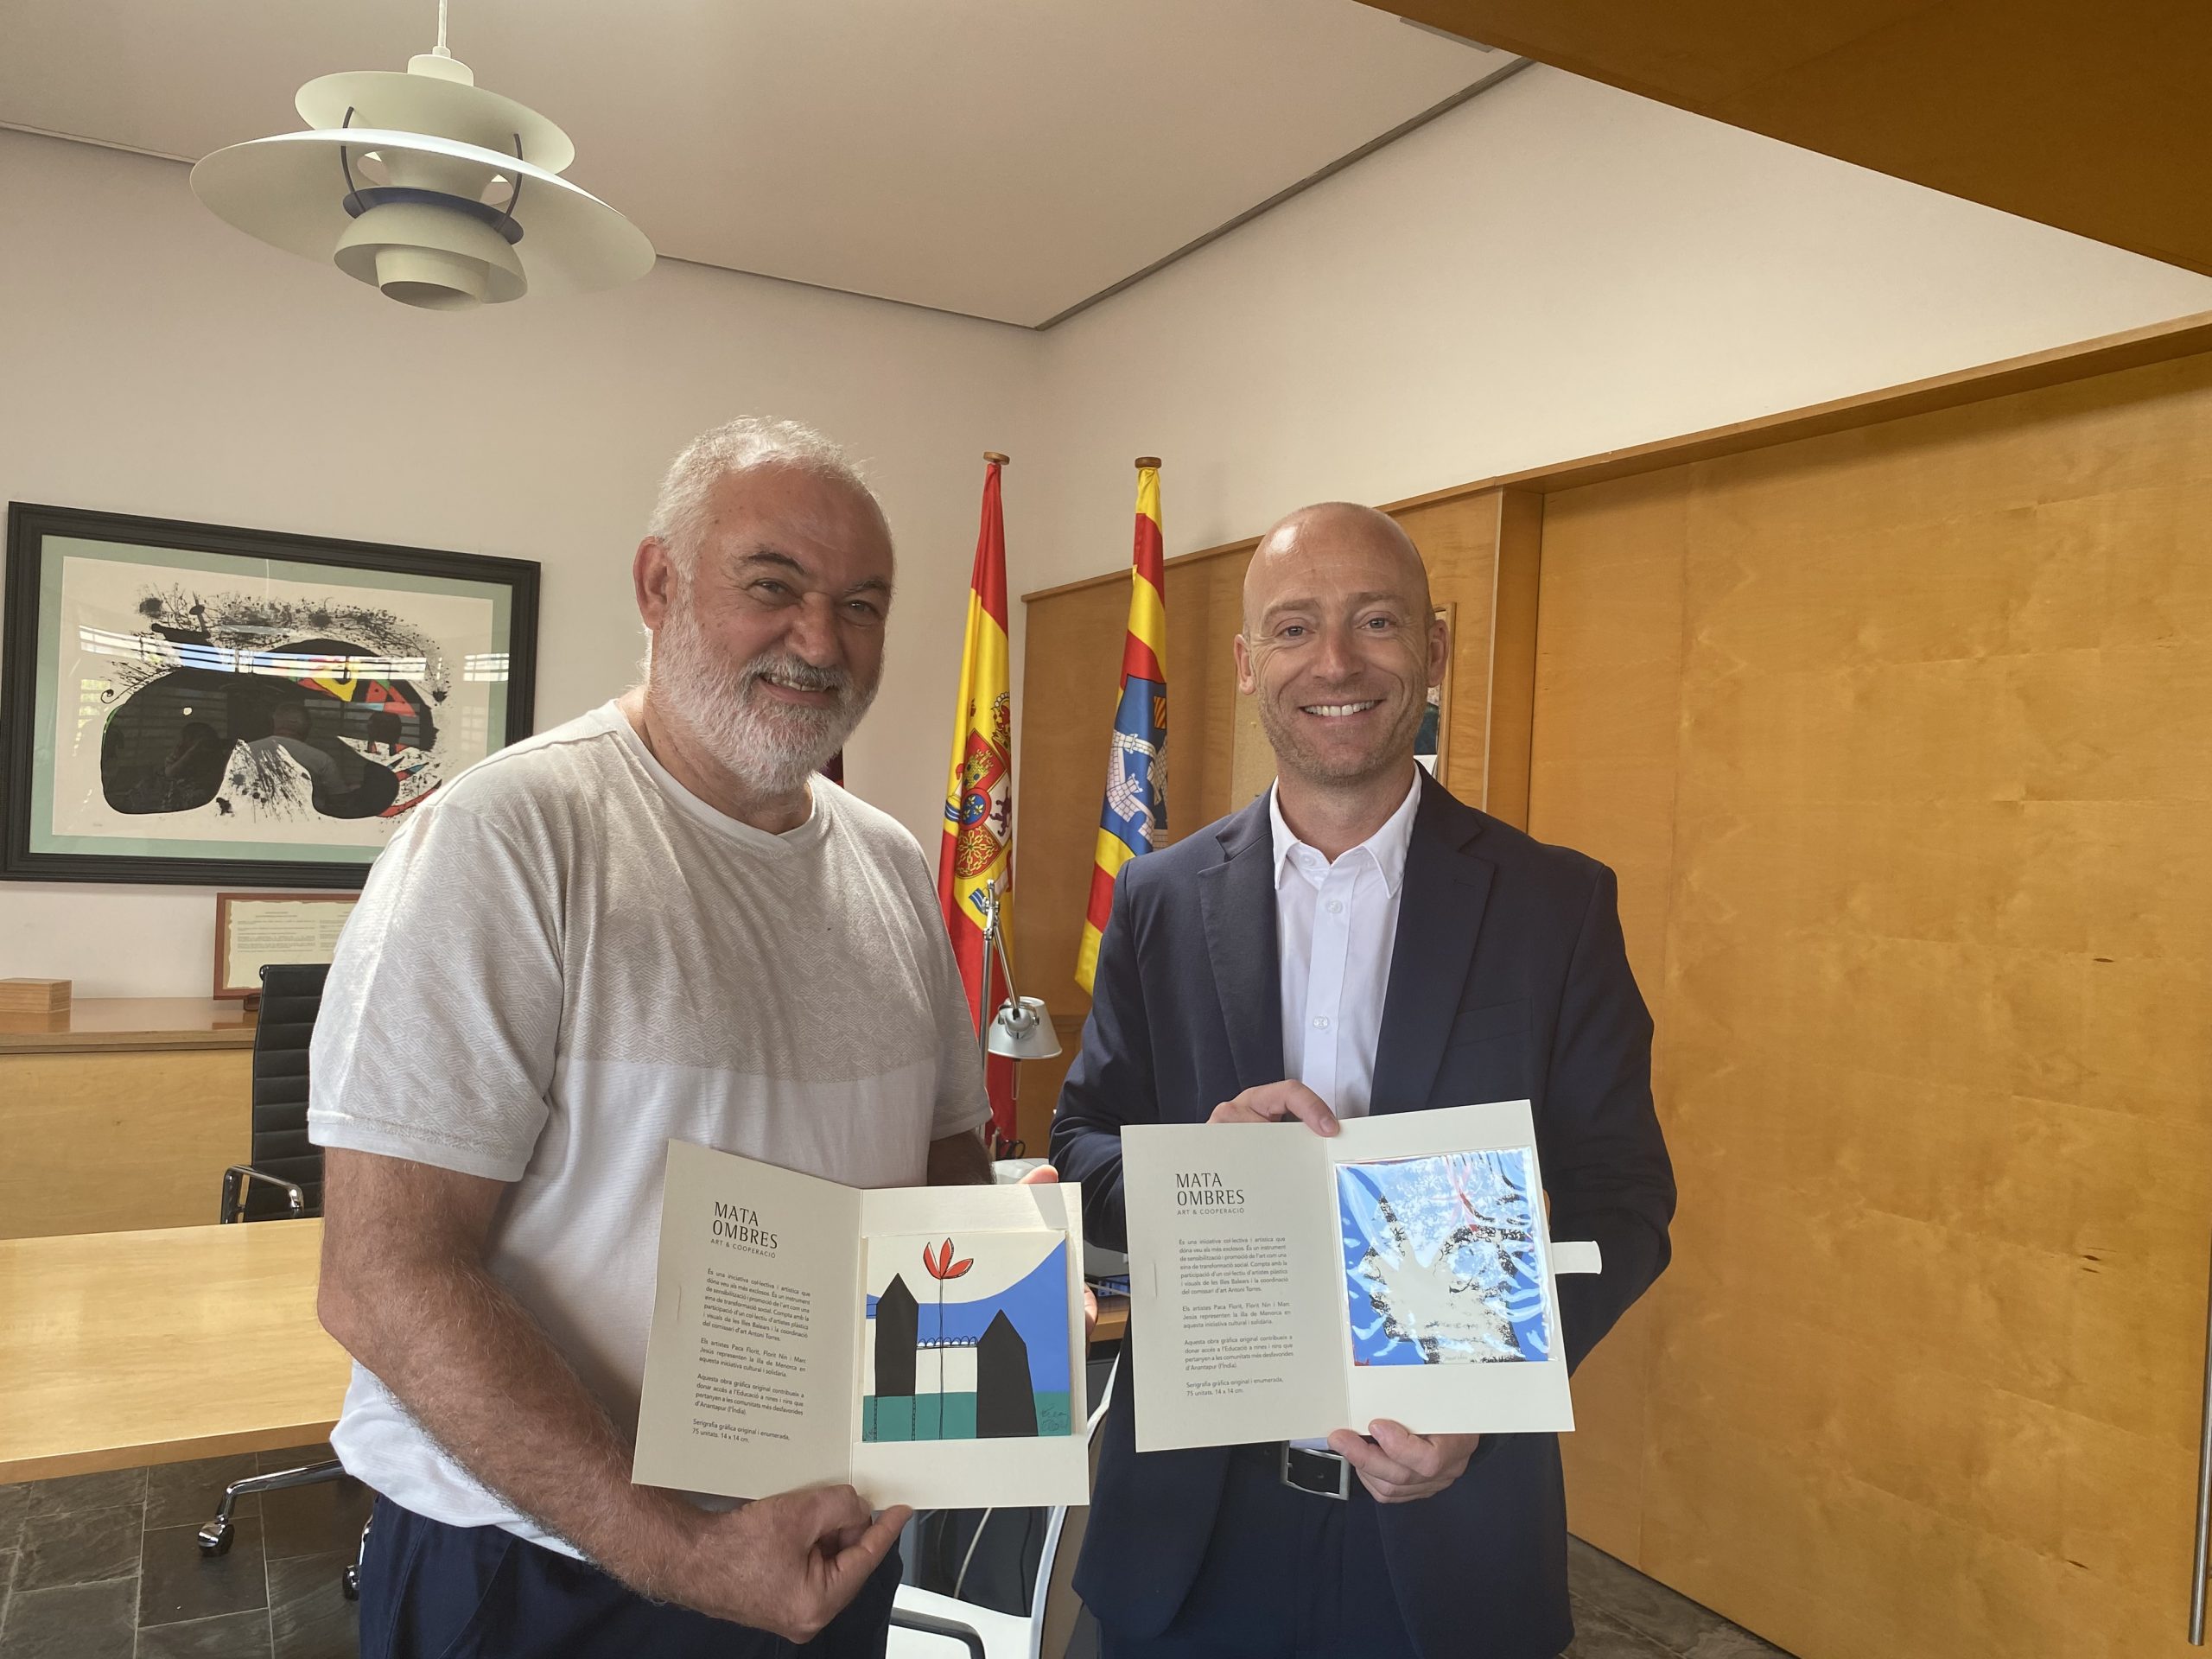 Josep Florit Gomila, vigilant de patrimoni històric, es jubila després de 42 anys al Consell de Menorca